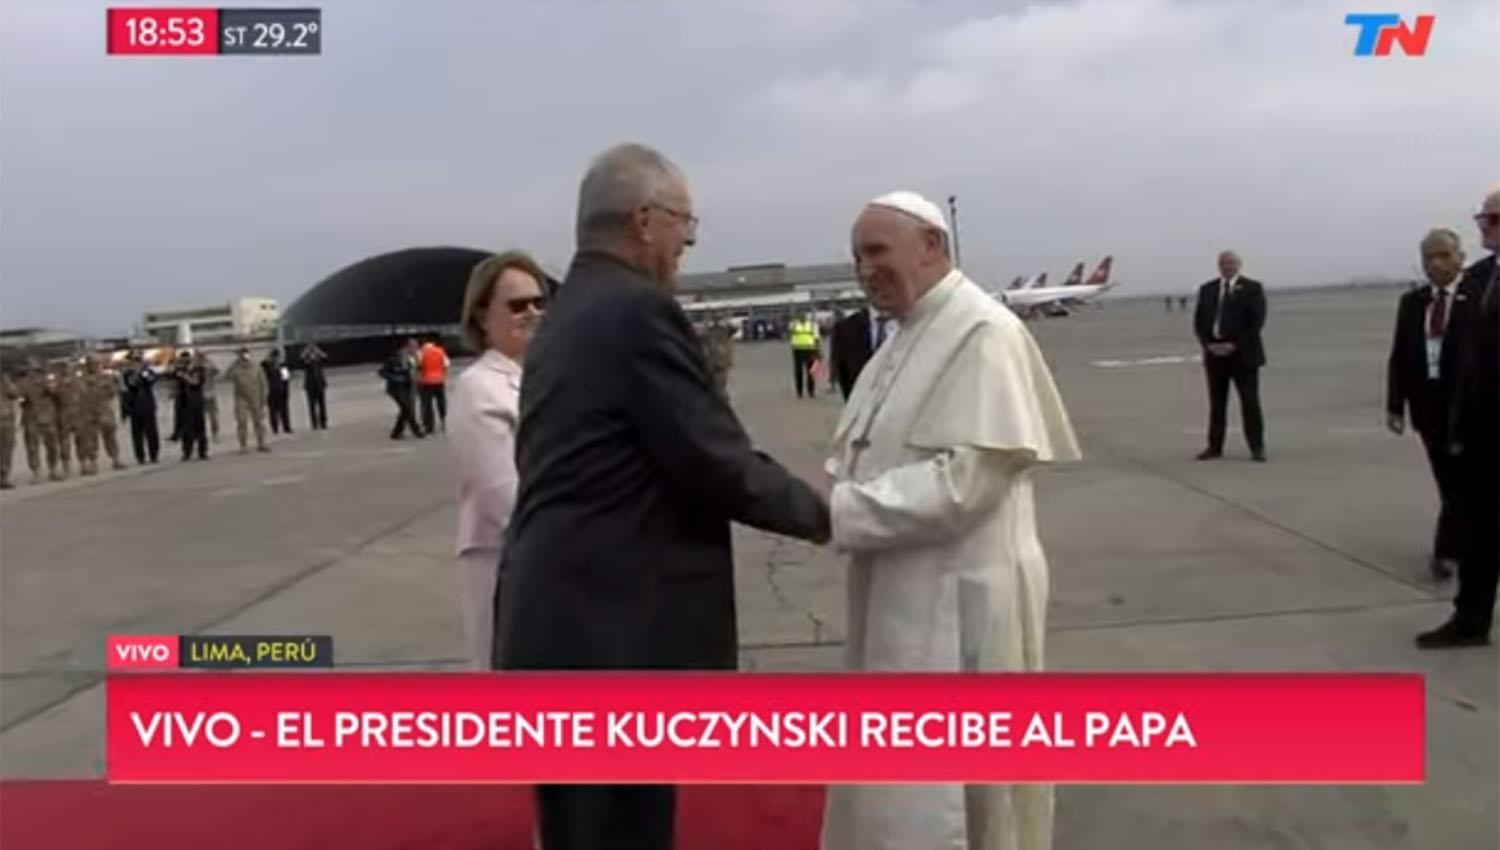 El presidente de Perú, Pedro Pablo Kuczynsk, recibió al papa Francisco en la pista del aeropuerto. CAPTURA DE PANTALLA